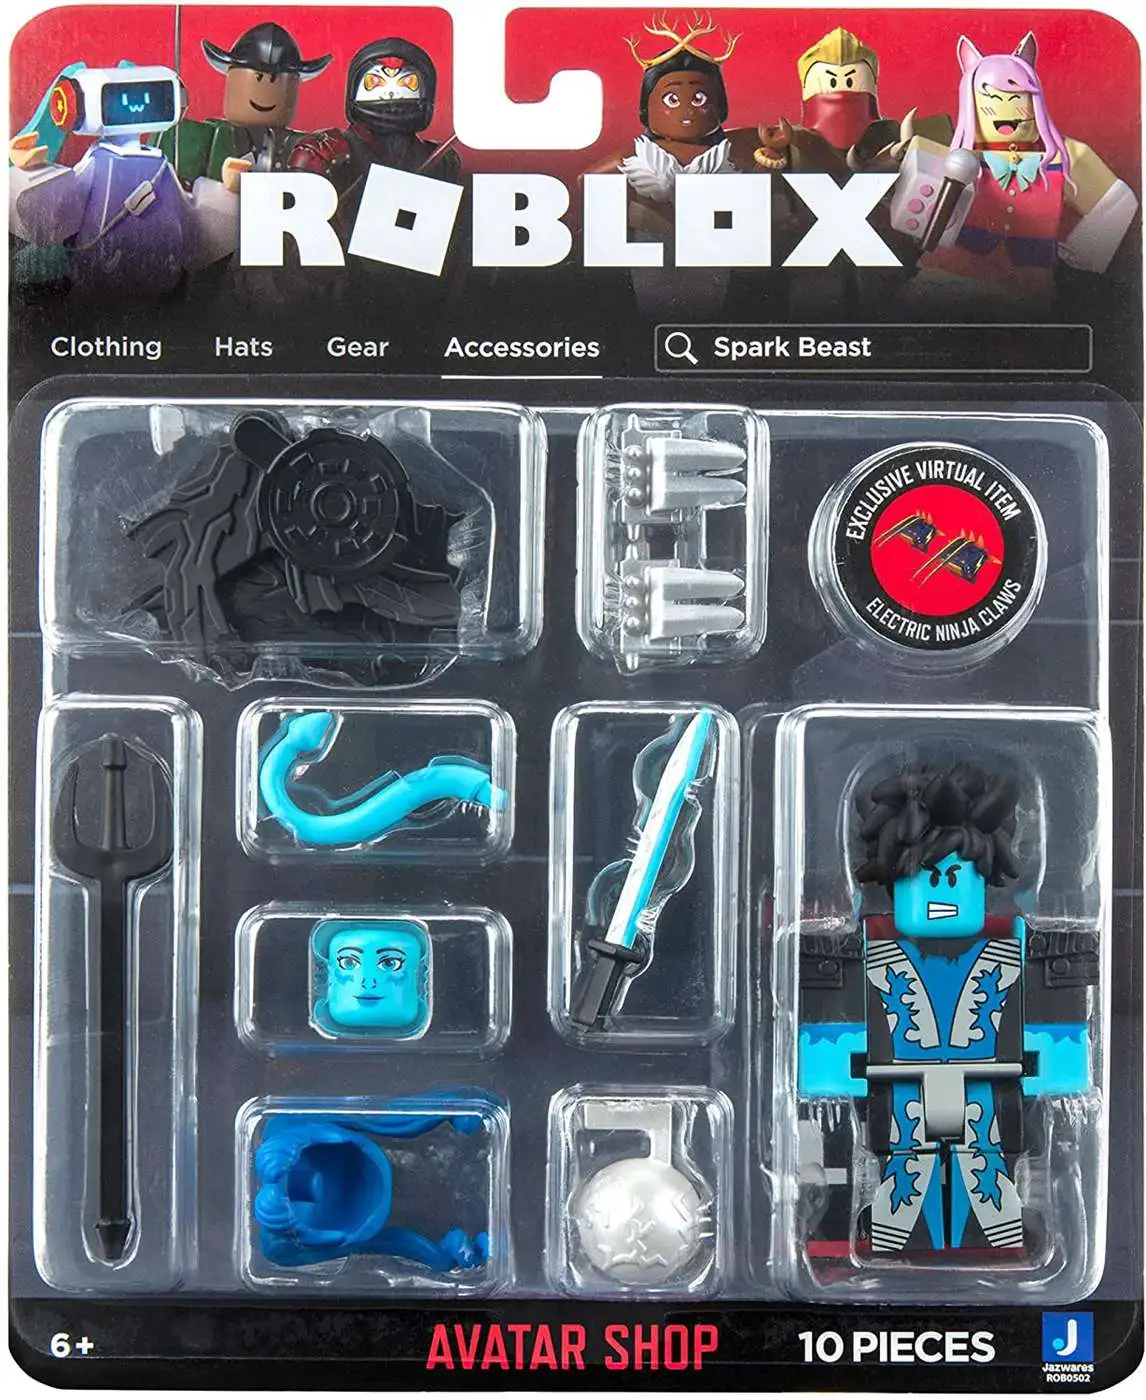 Roblox Avatar Shop Punk's Not Dead! Action Figure 